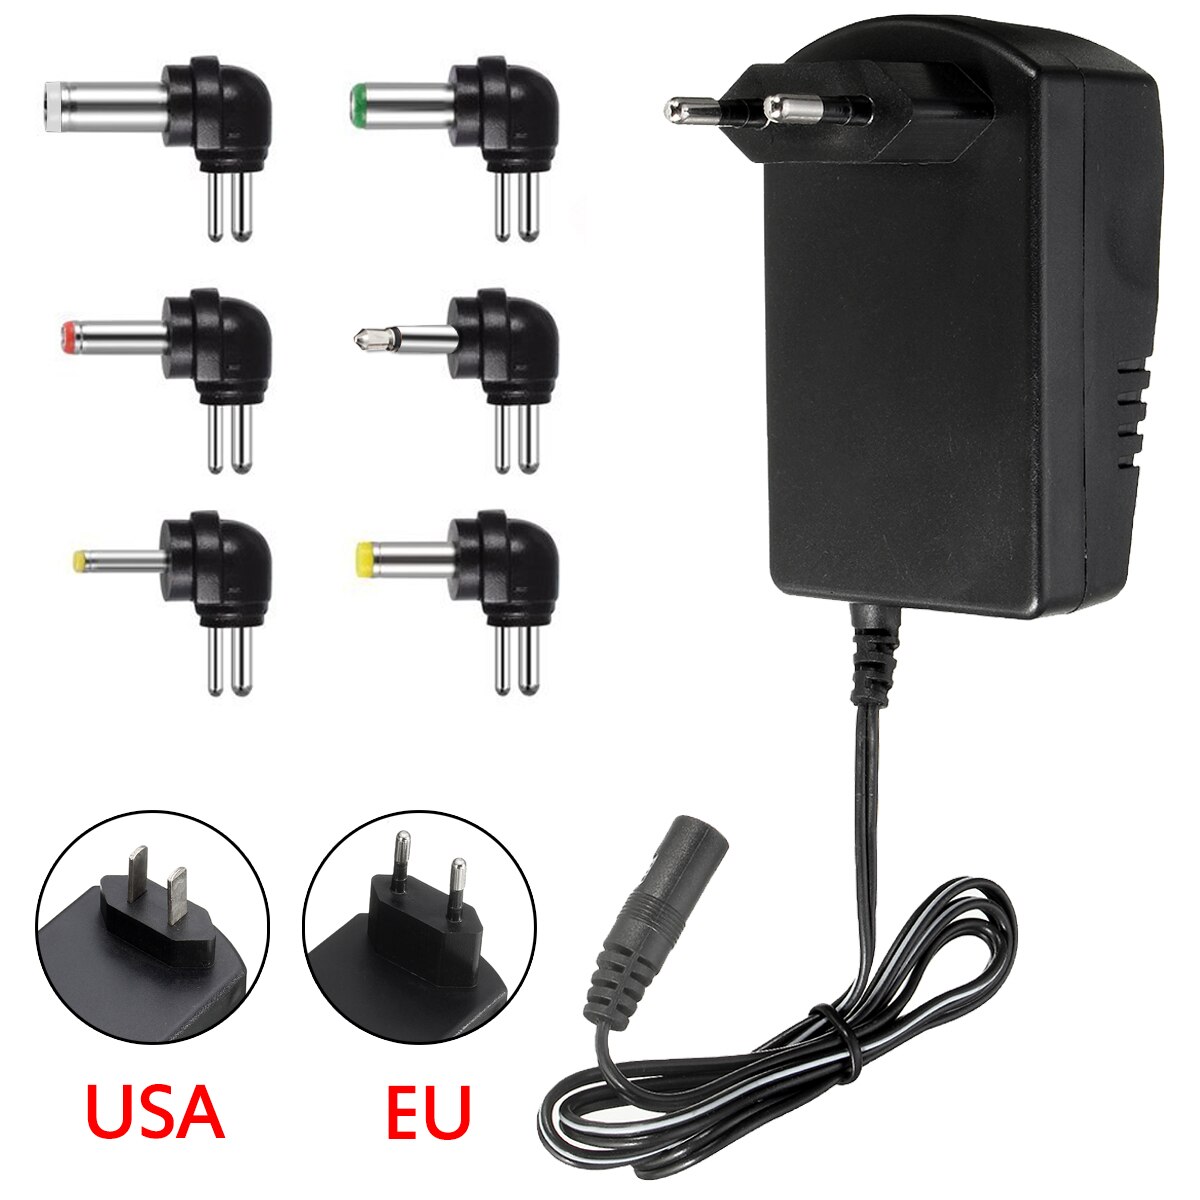 Multi Voltage 3 v 4.5 v 6 v 7.5 v 9 v 12 v Voeding Adapter Converter Kabel 6 stekkers